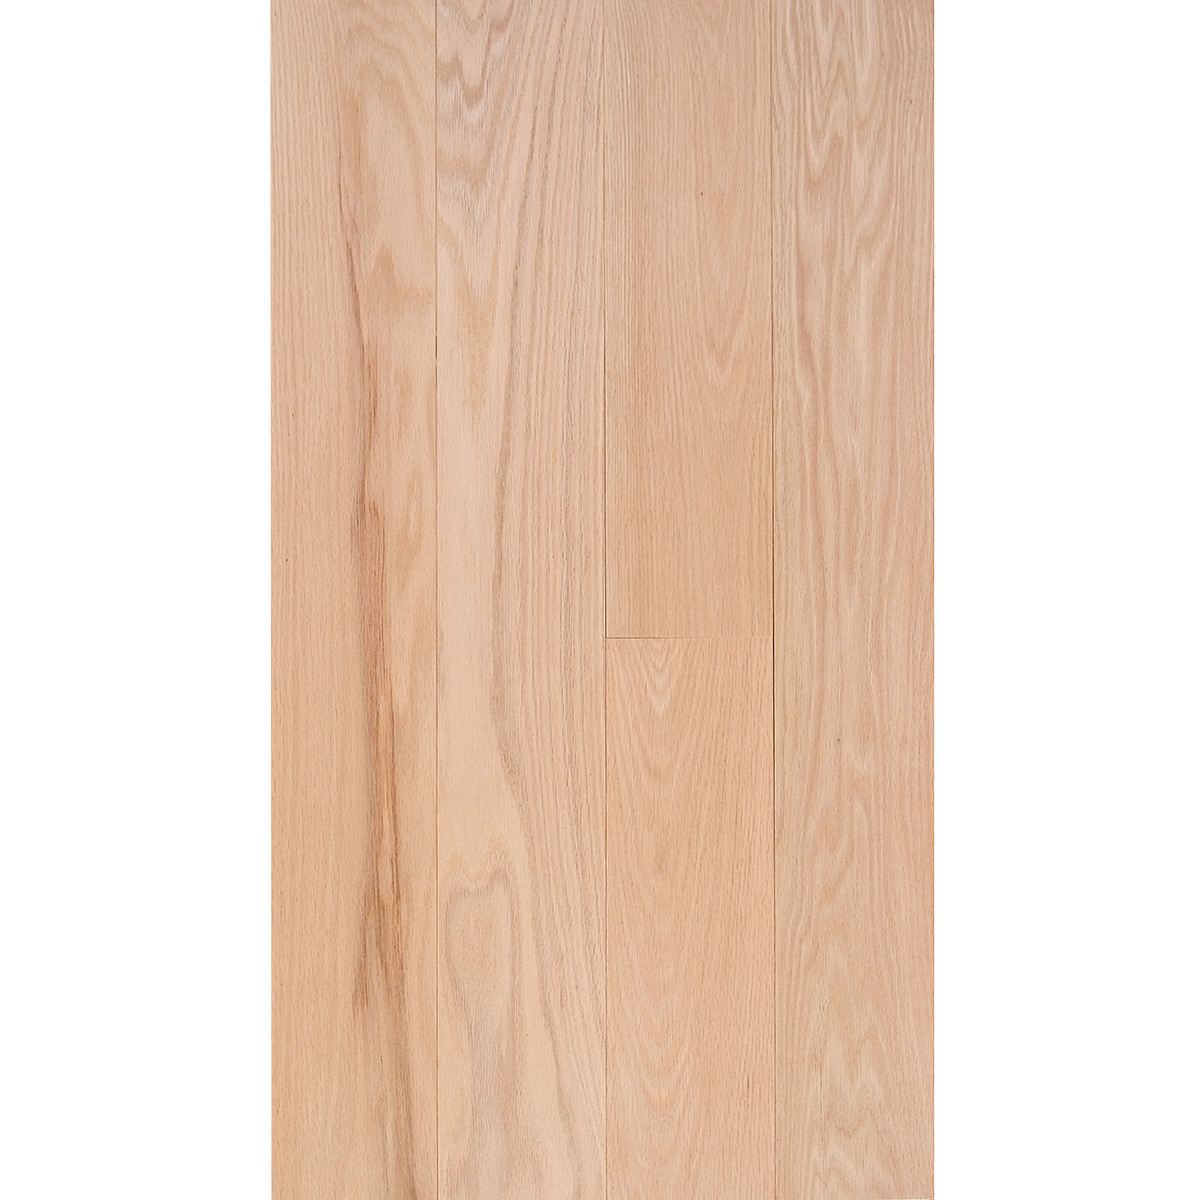 27 Lovely 5 Inch Wide Hickory Hardwood Flooring 2024 free download 5 inch wide hickory hardwood flooring of red oak 3 4 x 5 select grade flooring for fs 5 redoak select em flooring